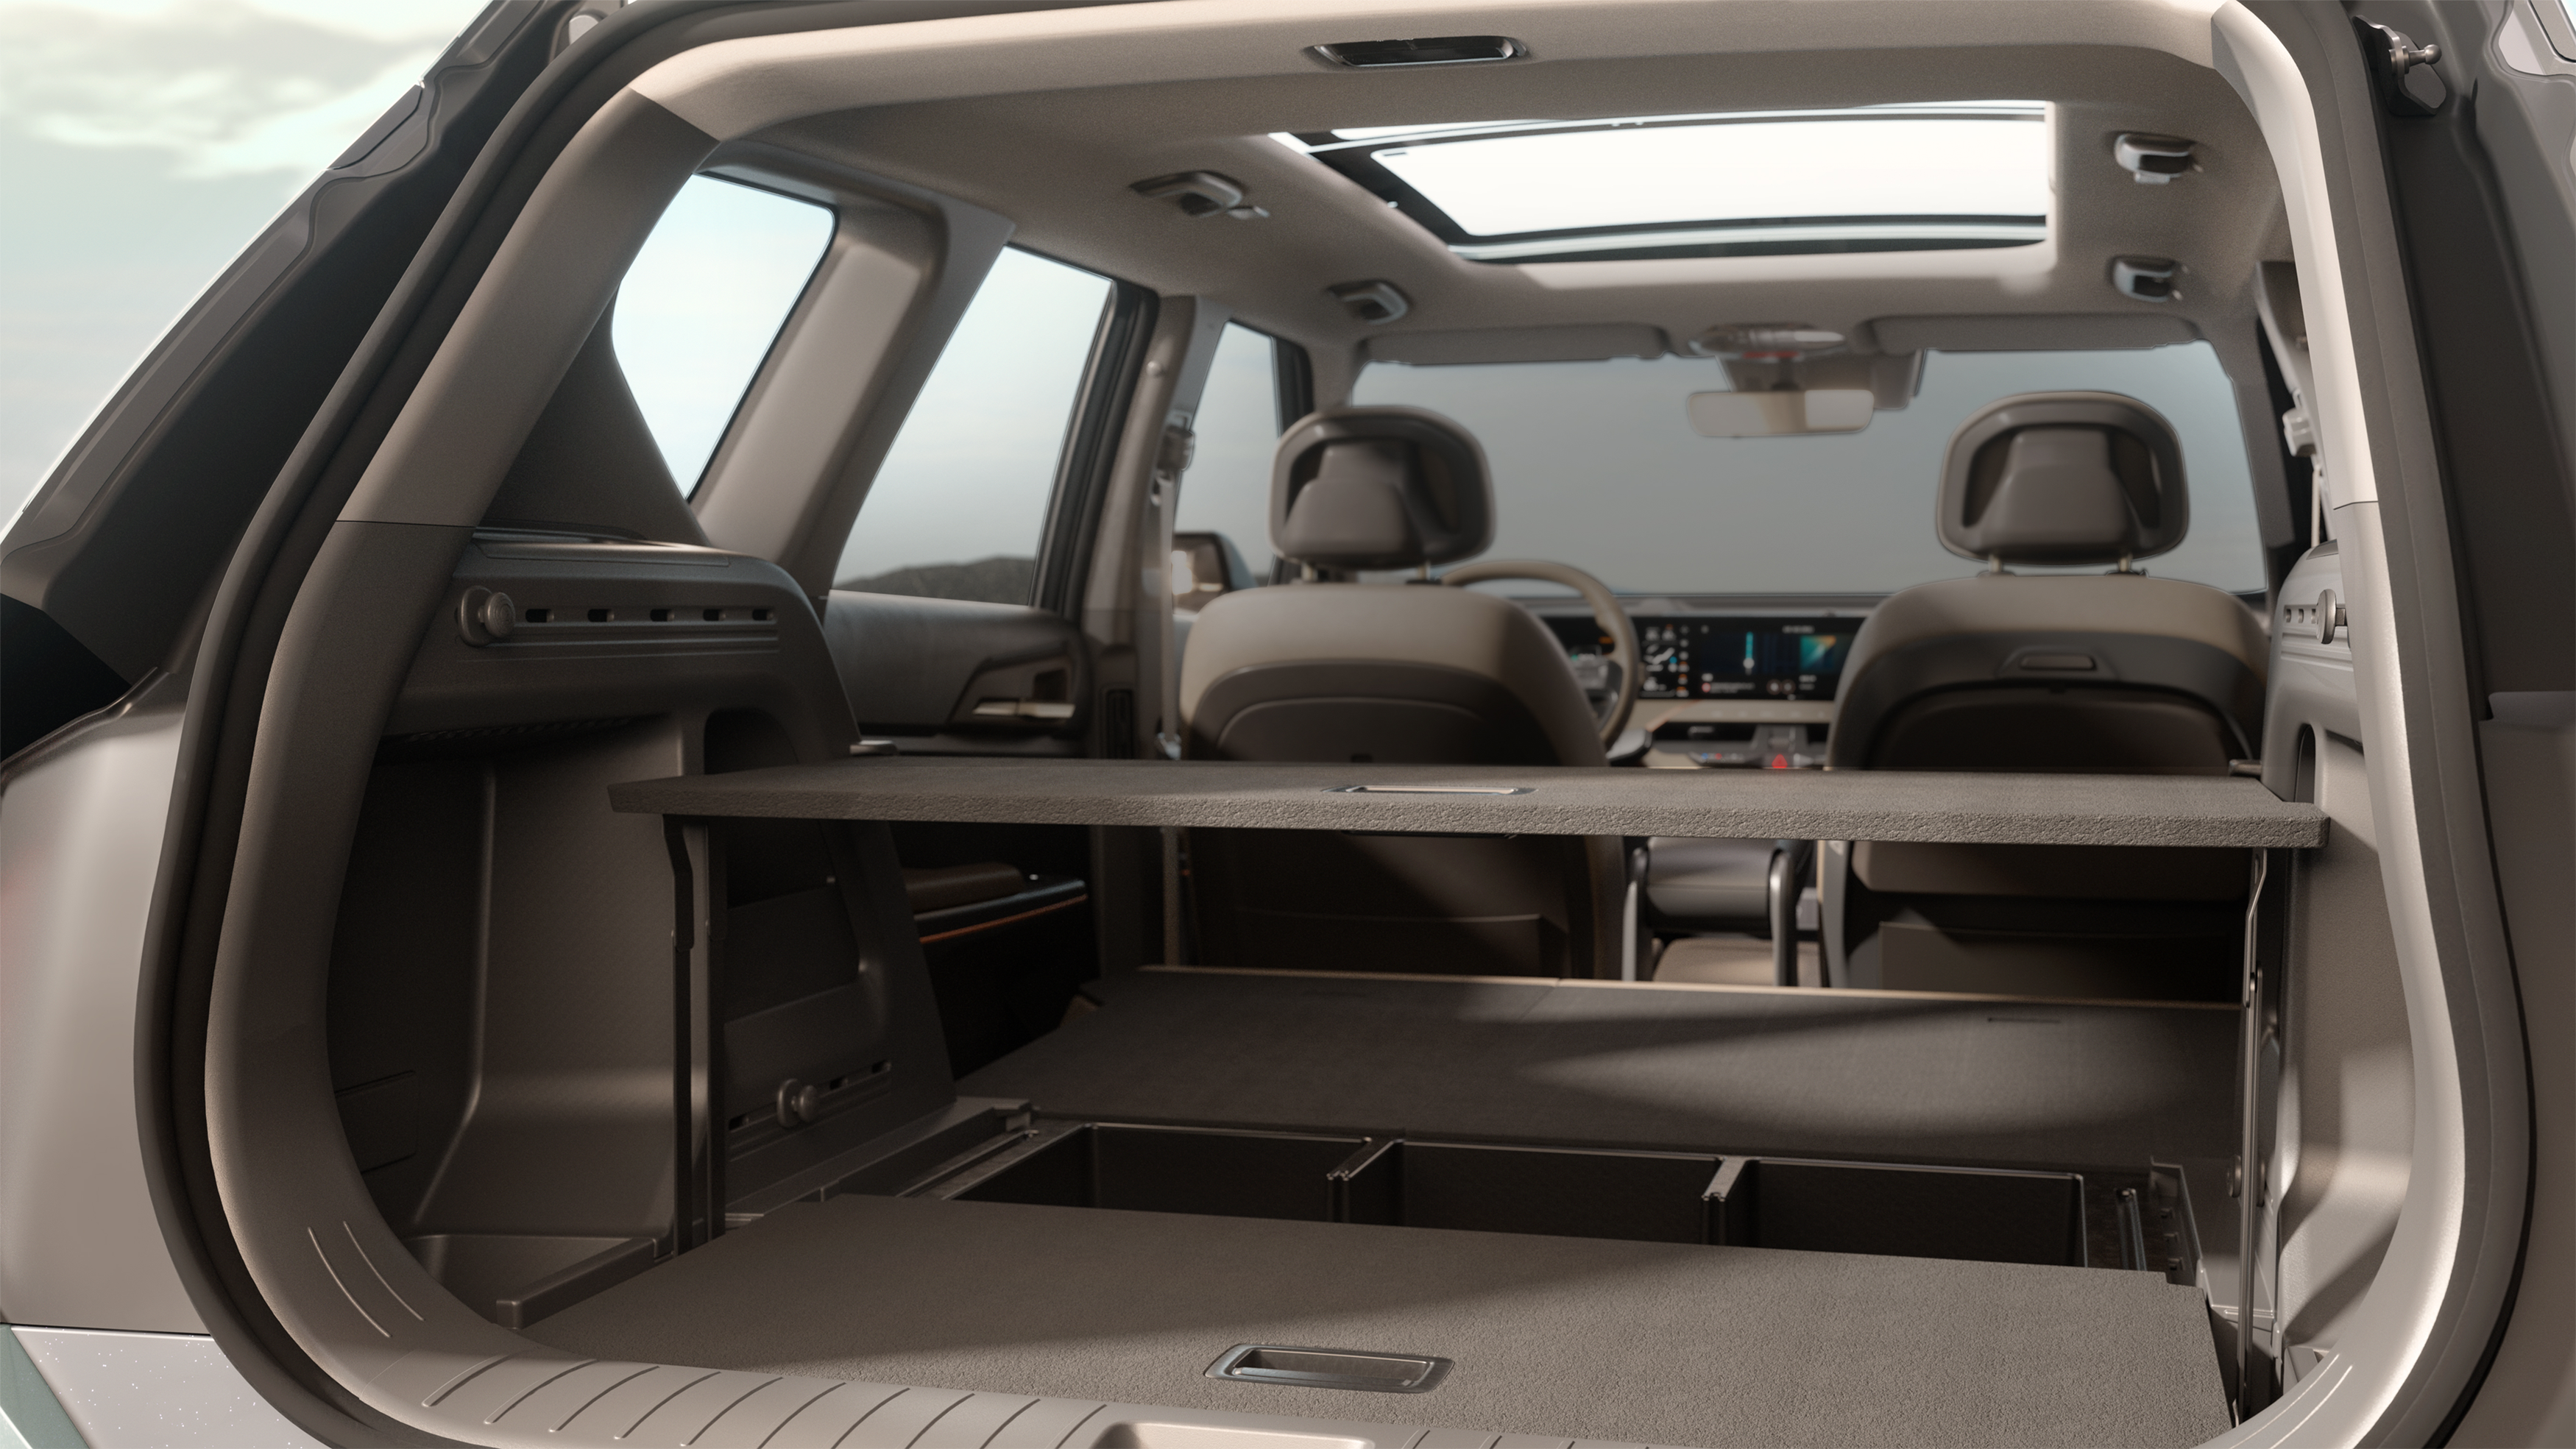 Kia, yeni elektrikli SUV modeli EV5'i tanıttı